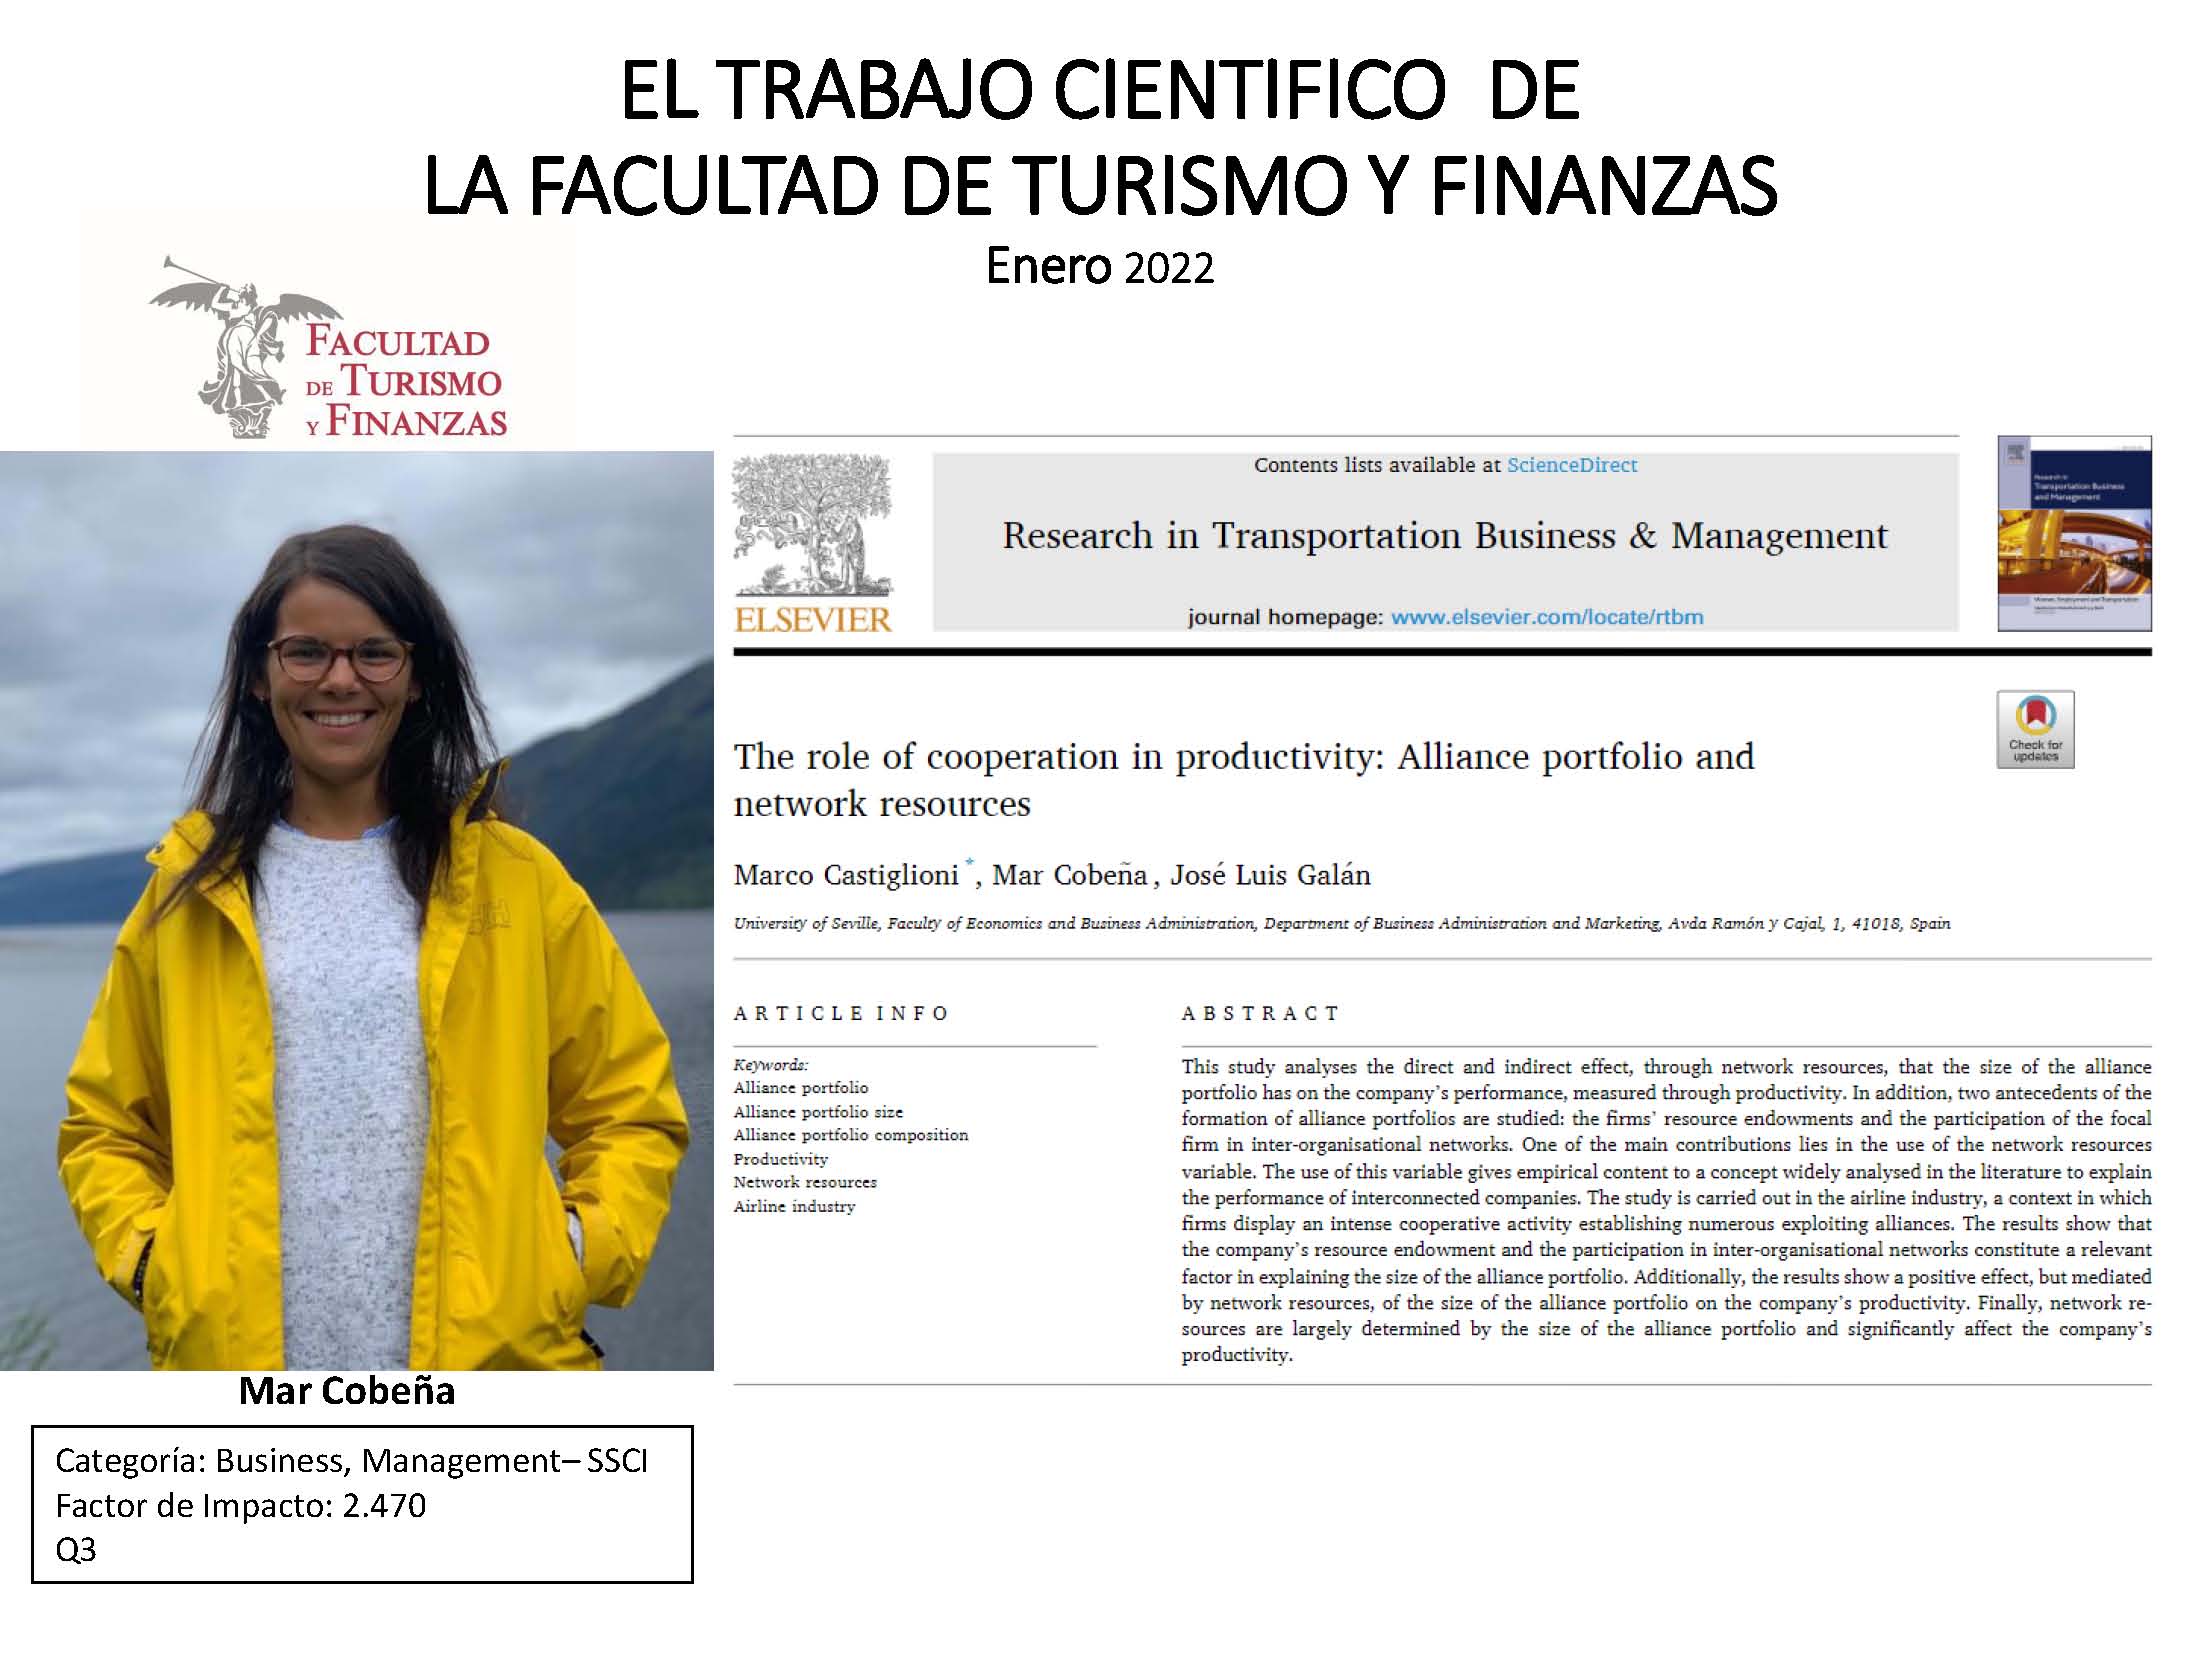 María Del Mar Cobeña Ruiz-Lopera obtiene el Premio a la Publicación Científica (ENERO 2022) de la Facultad de Turismo y Finanzas